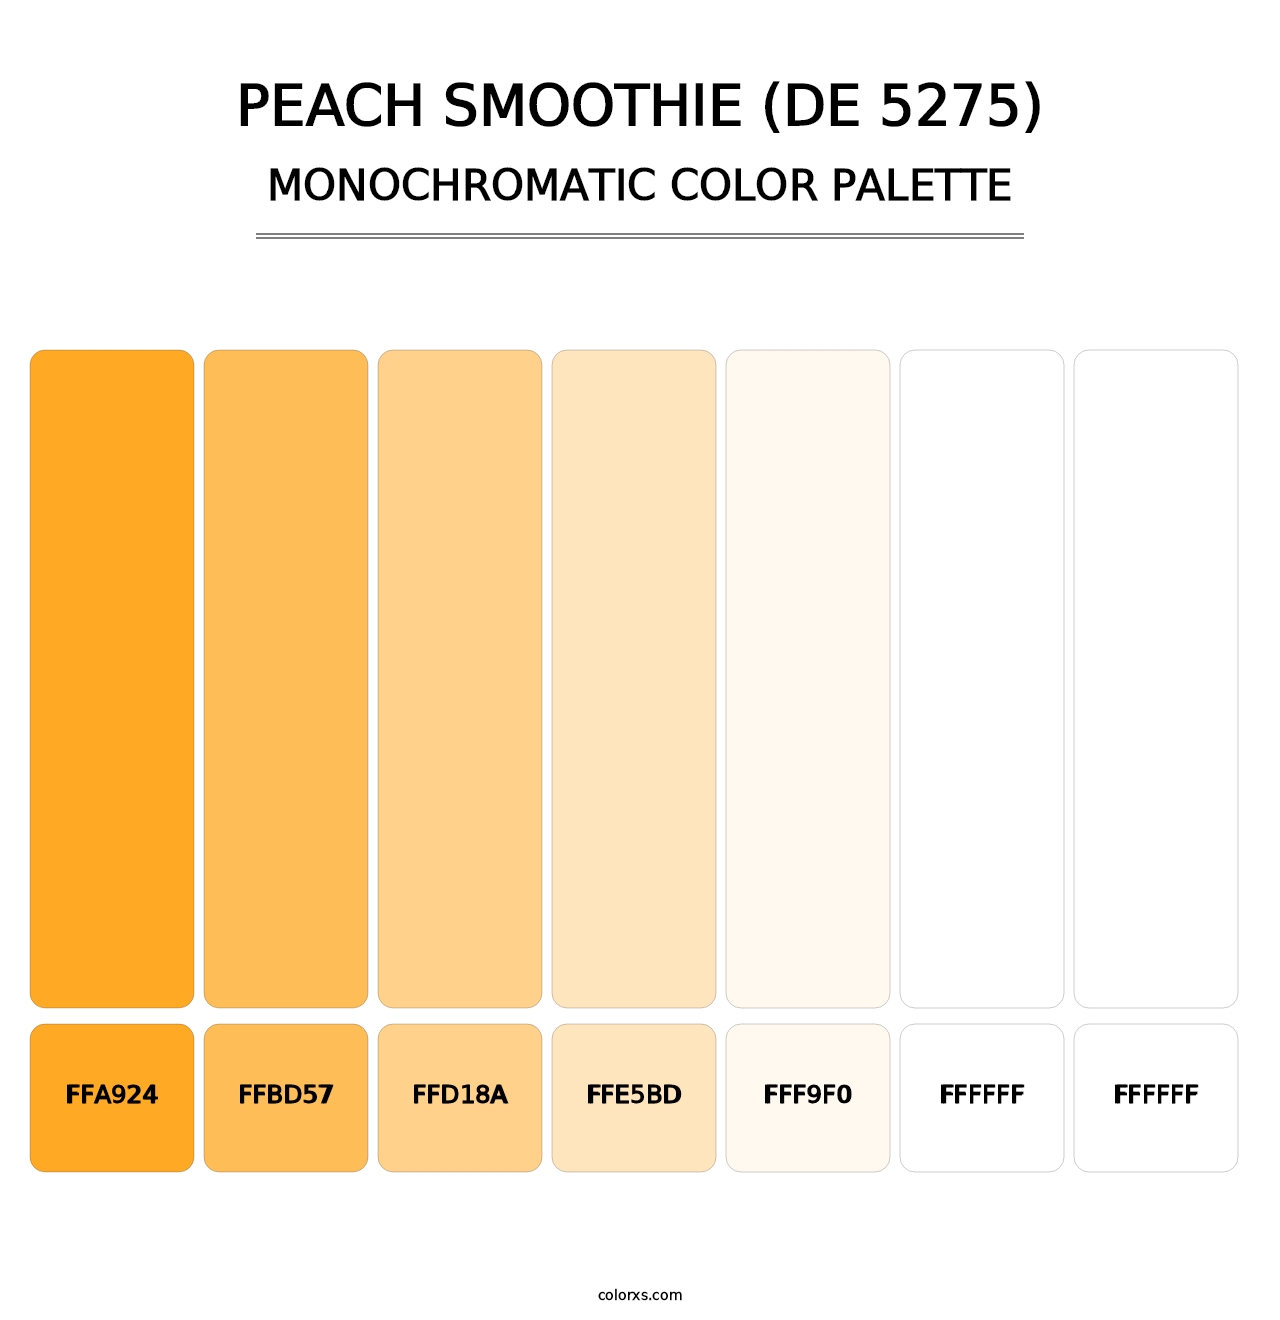 Peach Smoothie (DE 5275) - Monochromatic Color Palette